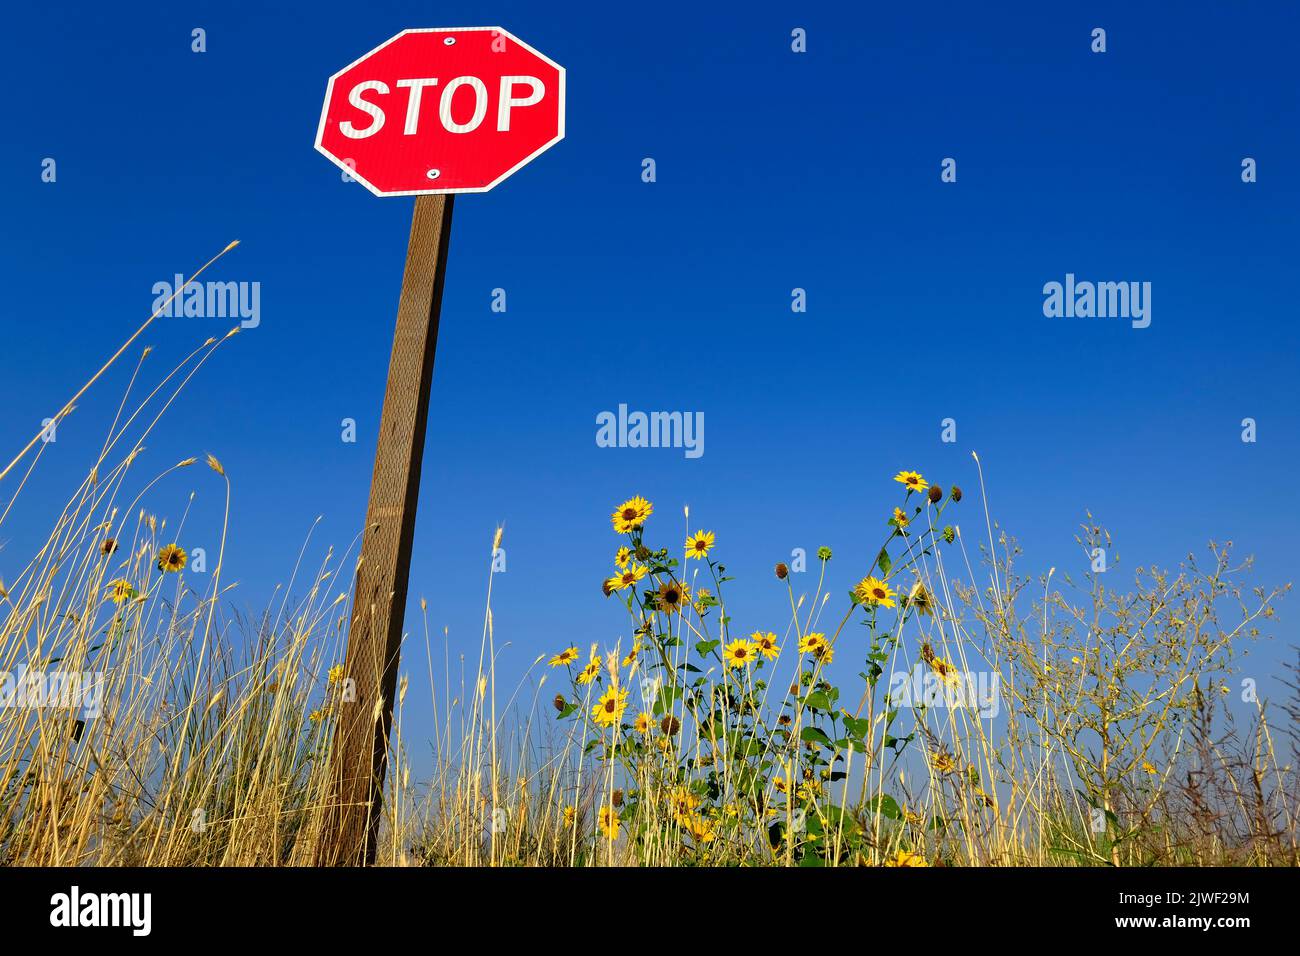 Stoppschild rote Warnung vor blauem Himmel mit gelben Sonnenblumen und Unkraut auf der Straße Stockfoto